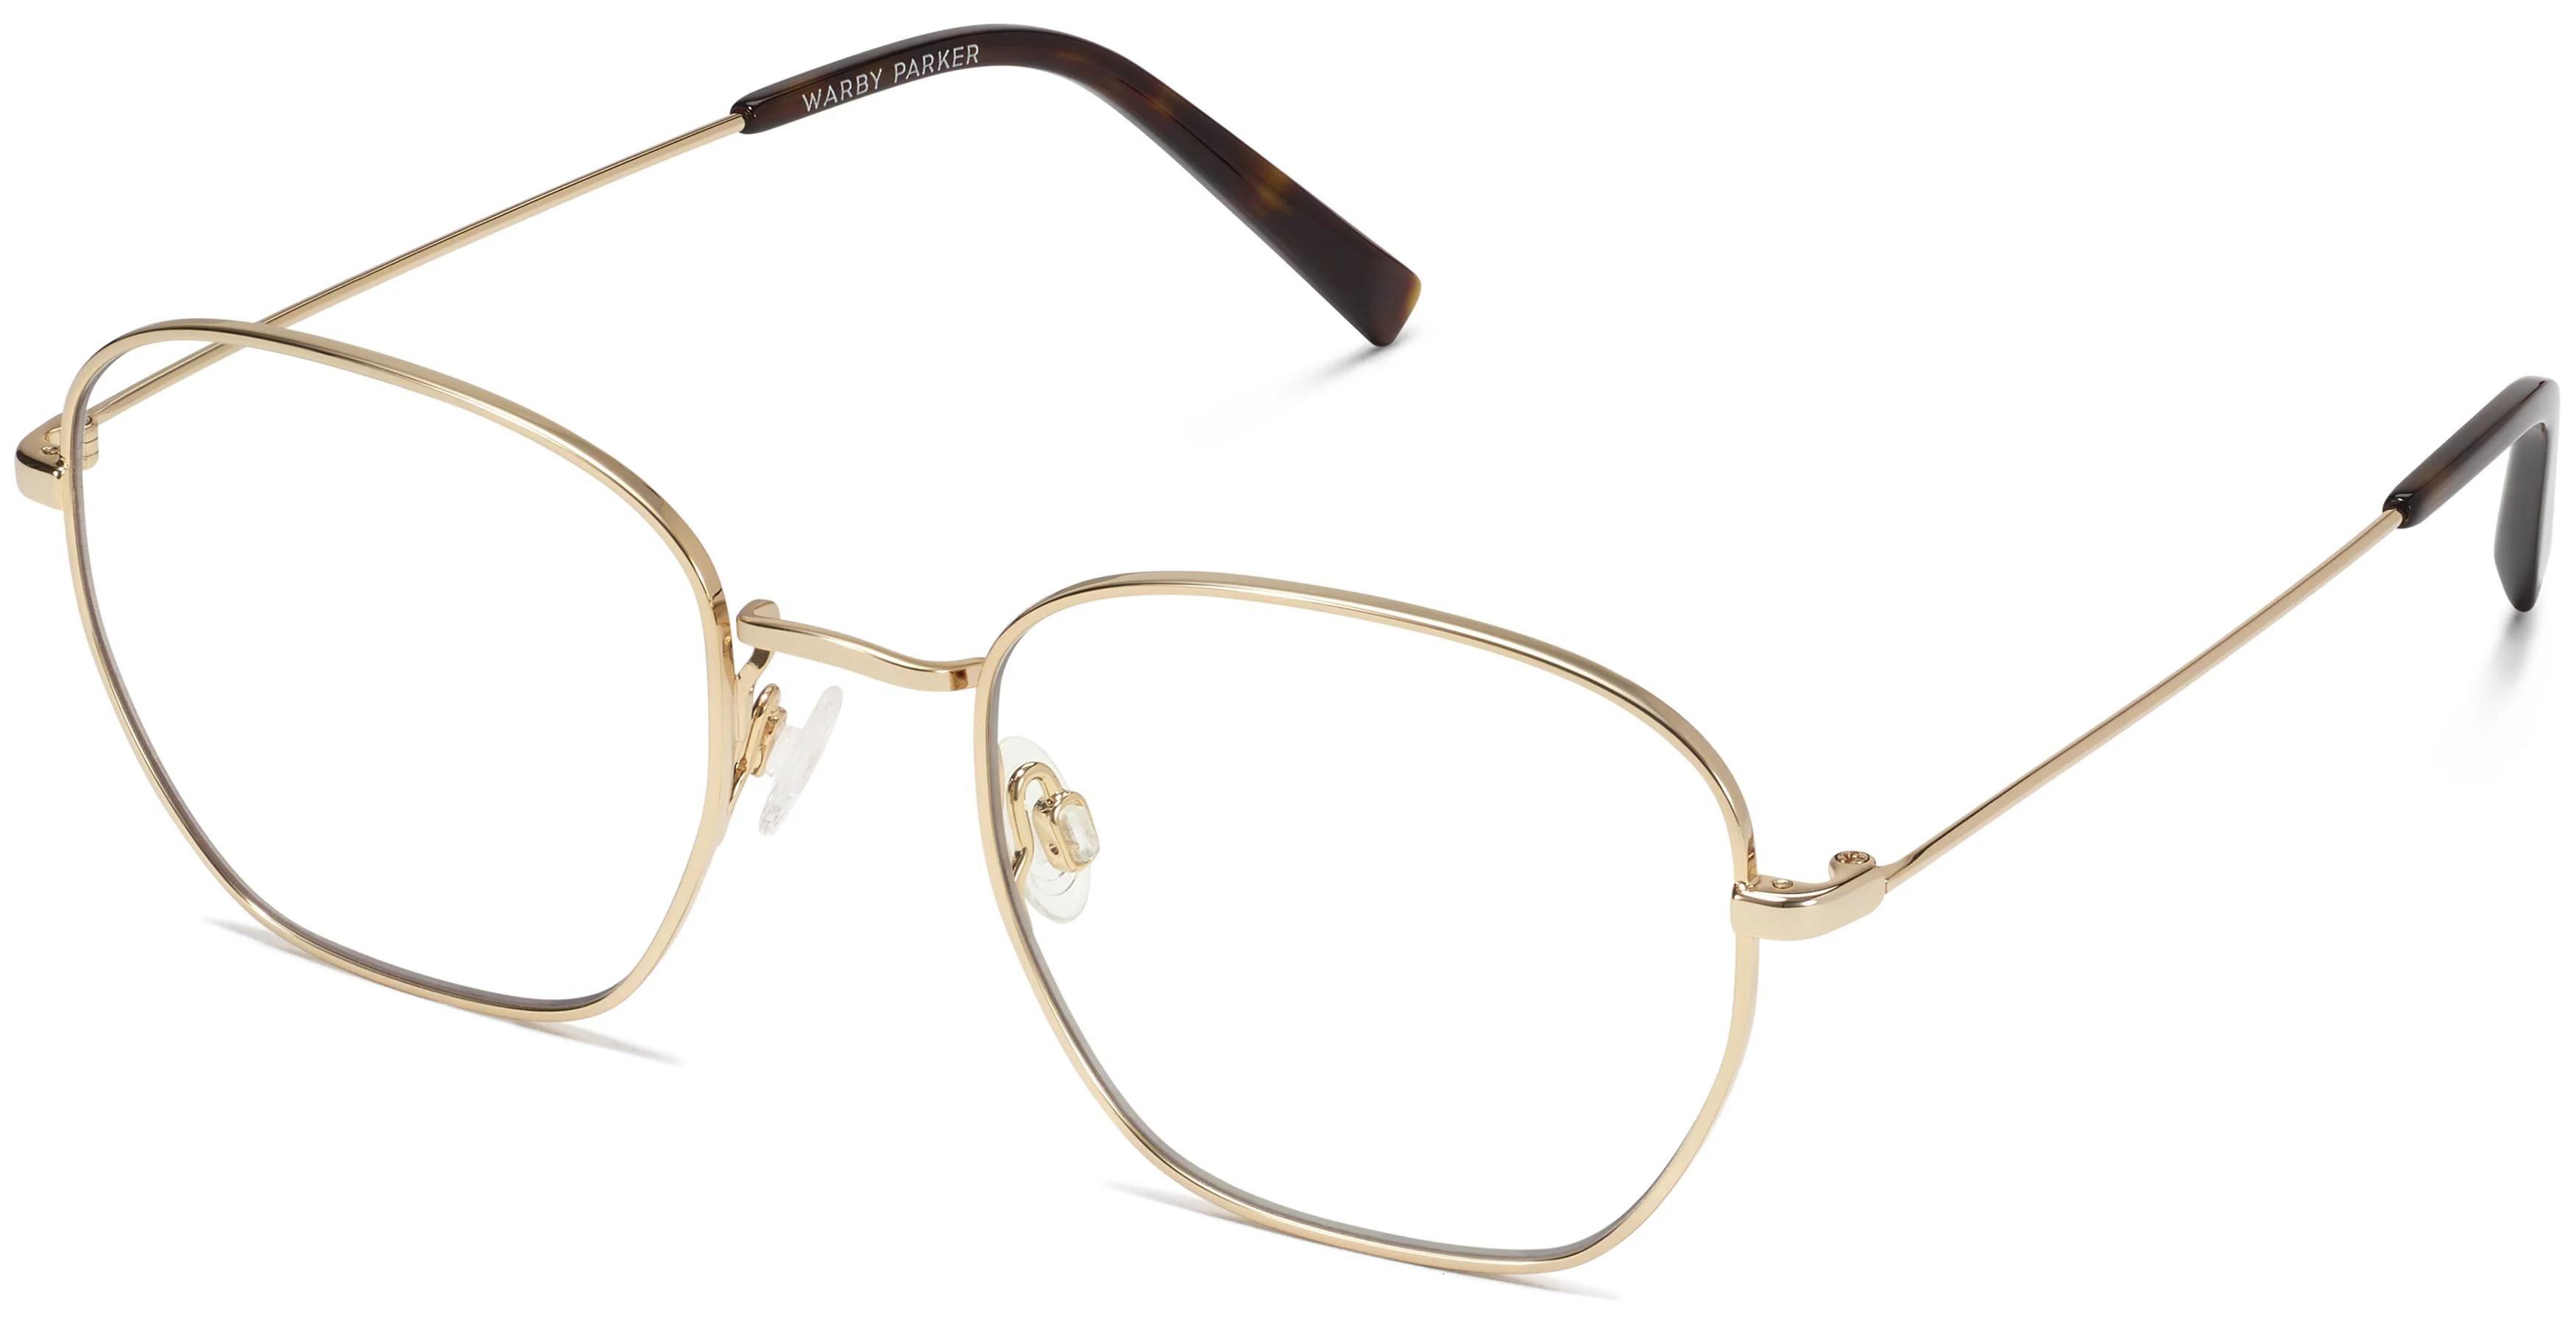 Hale Eyeglasses in Polished Gold | Warby Parker | Warby Parker (US)